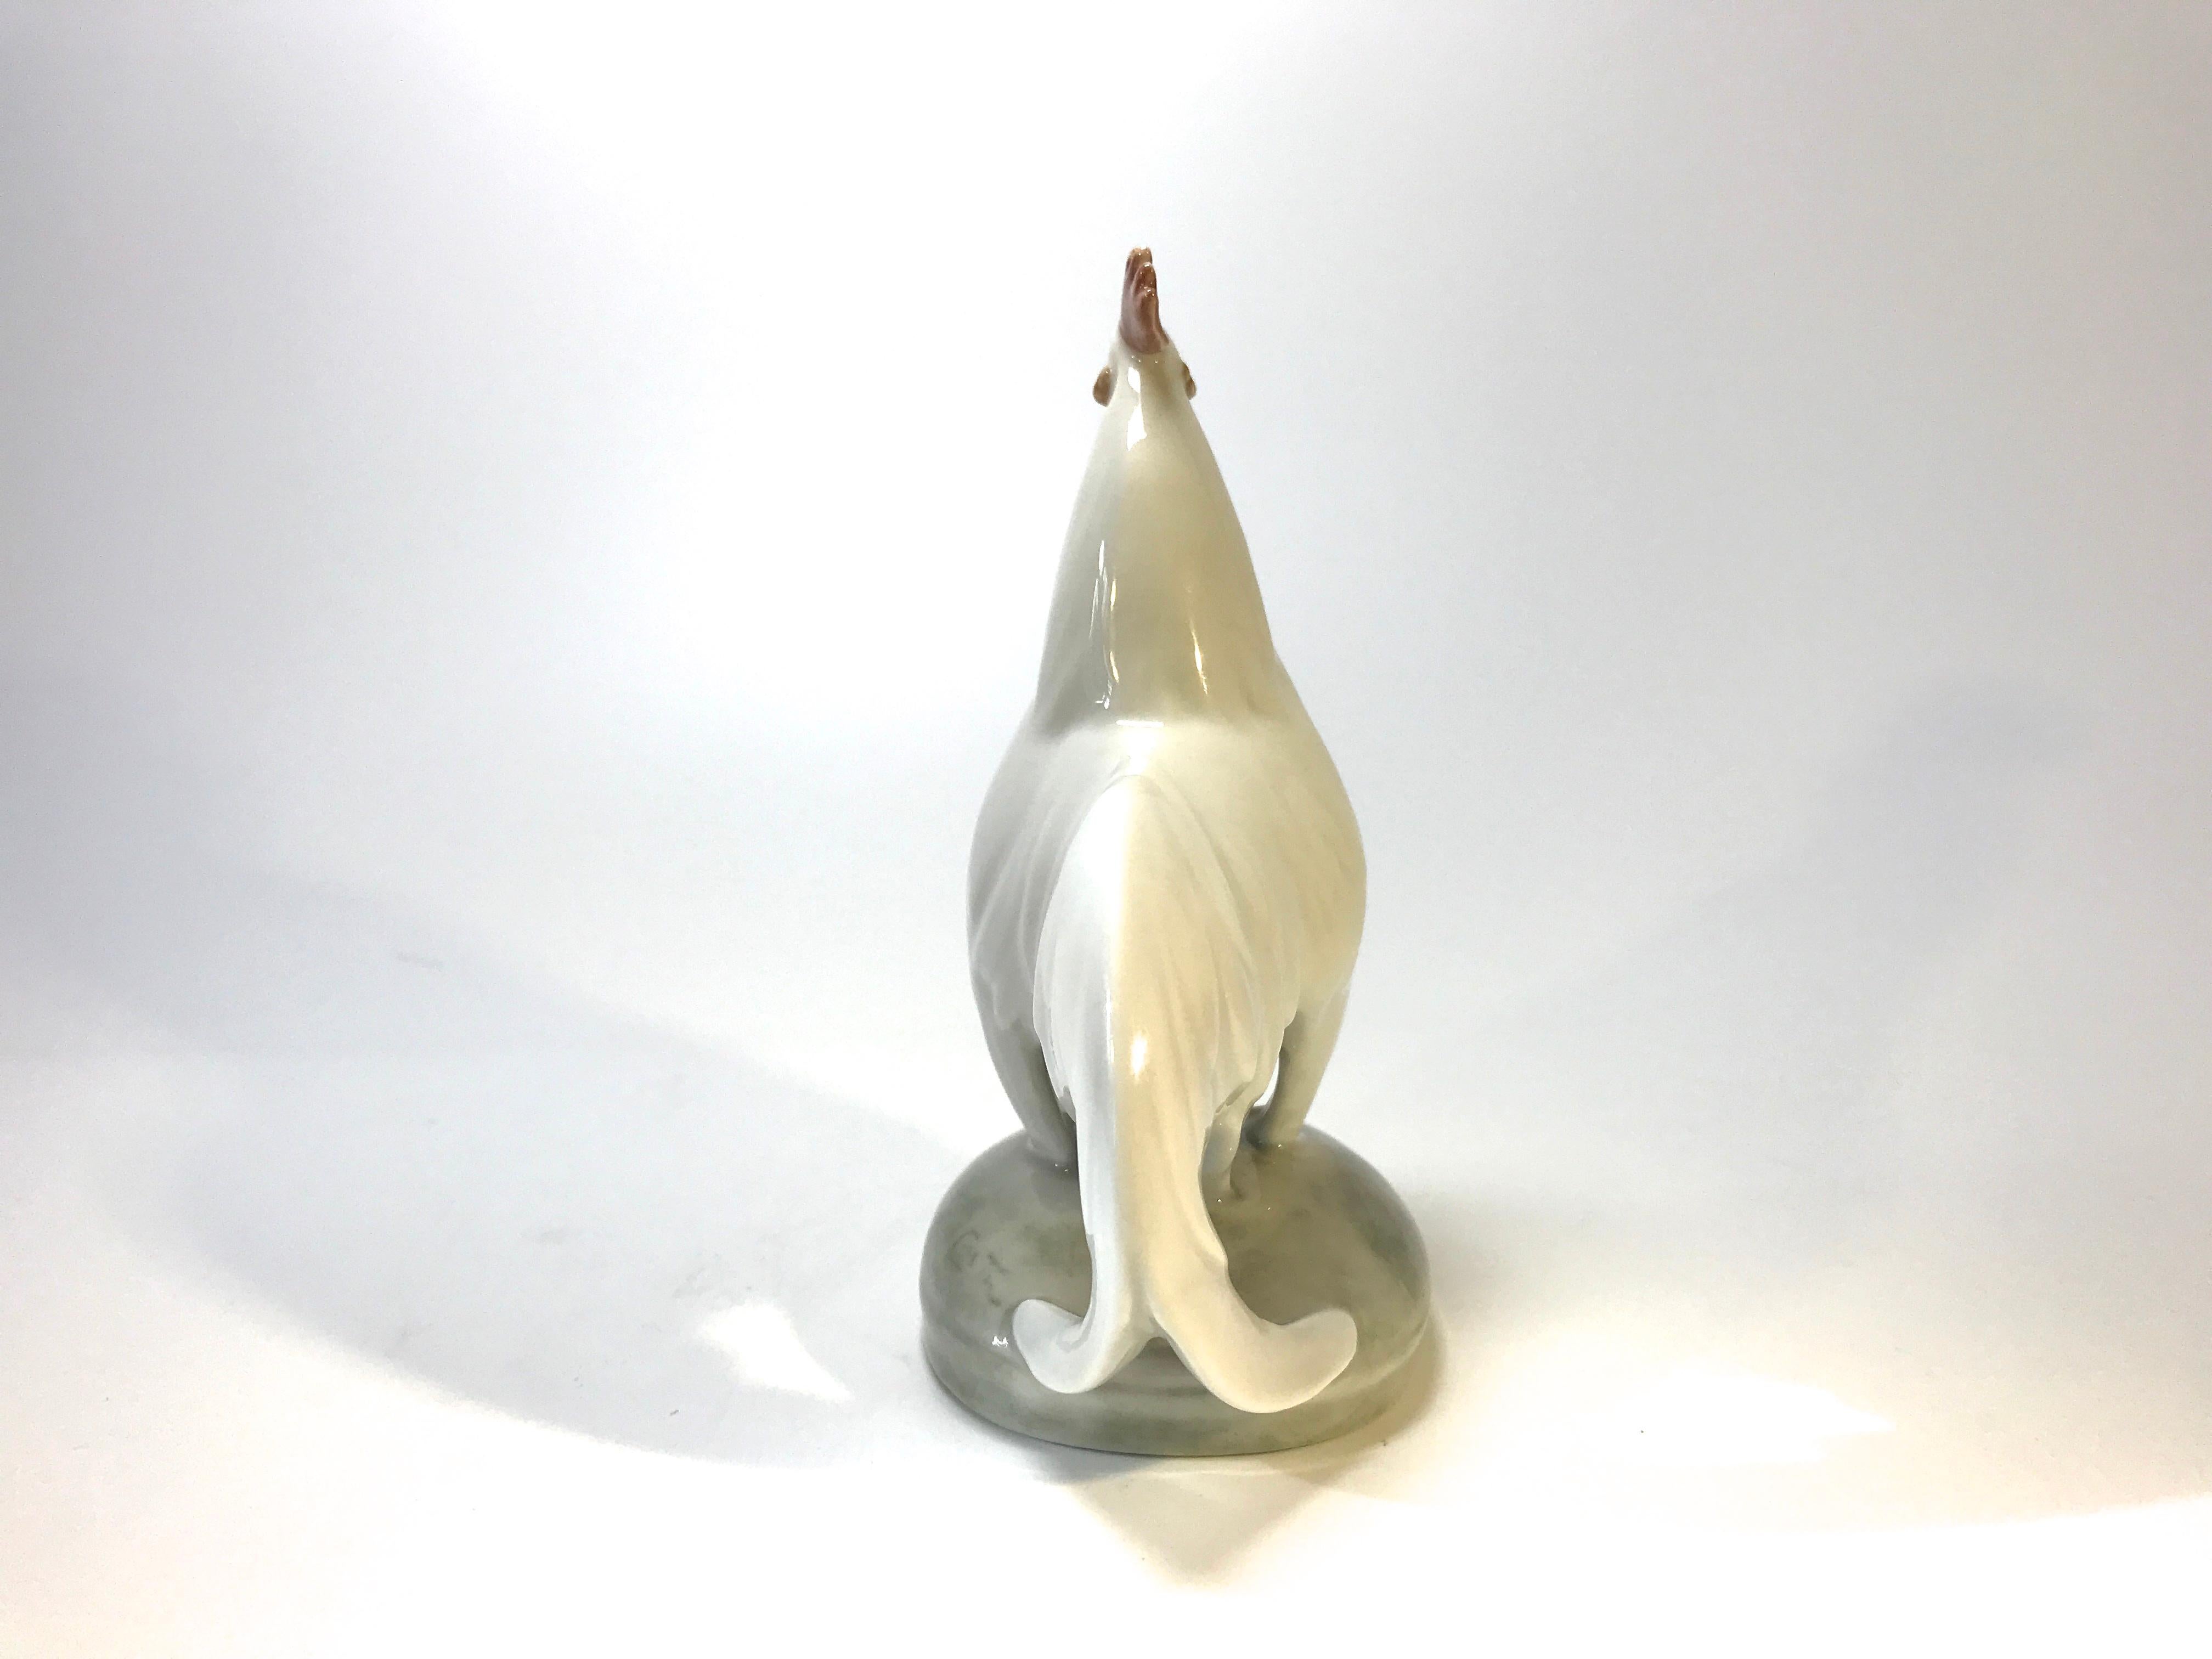 Glazed Royal Copenhagen Art Deco 1920s White Porcelain Cockerel Rooster Figure #1126